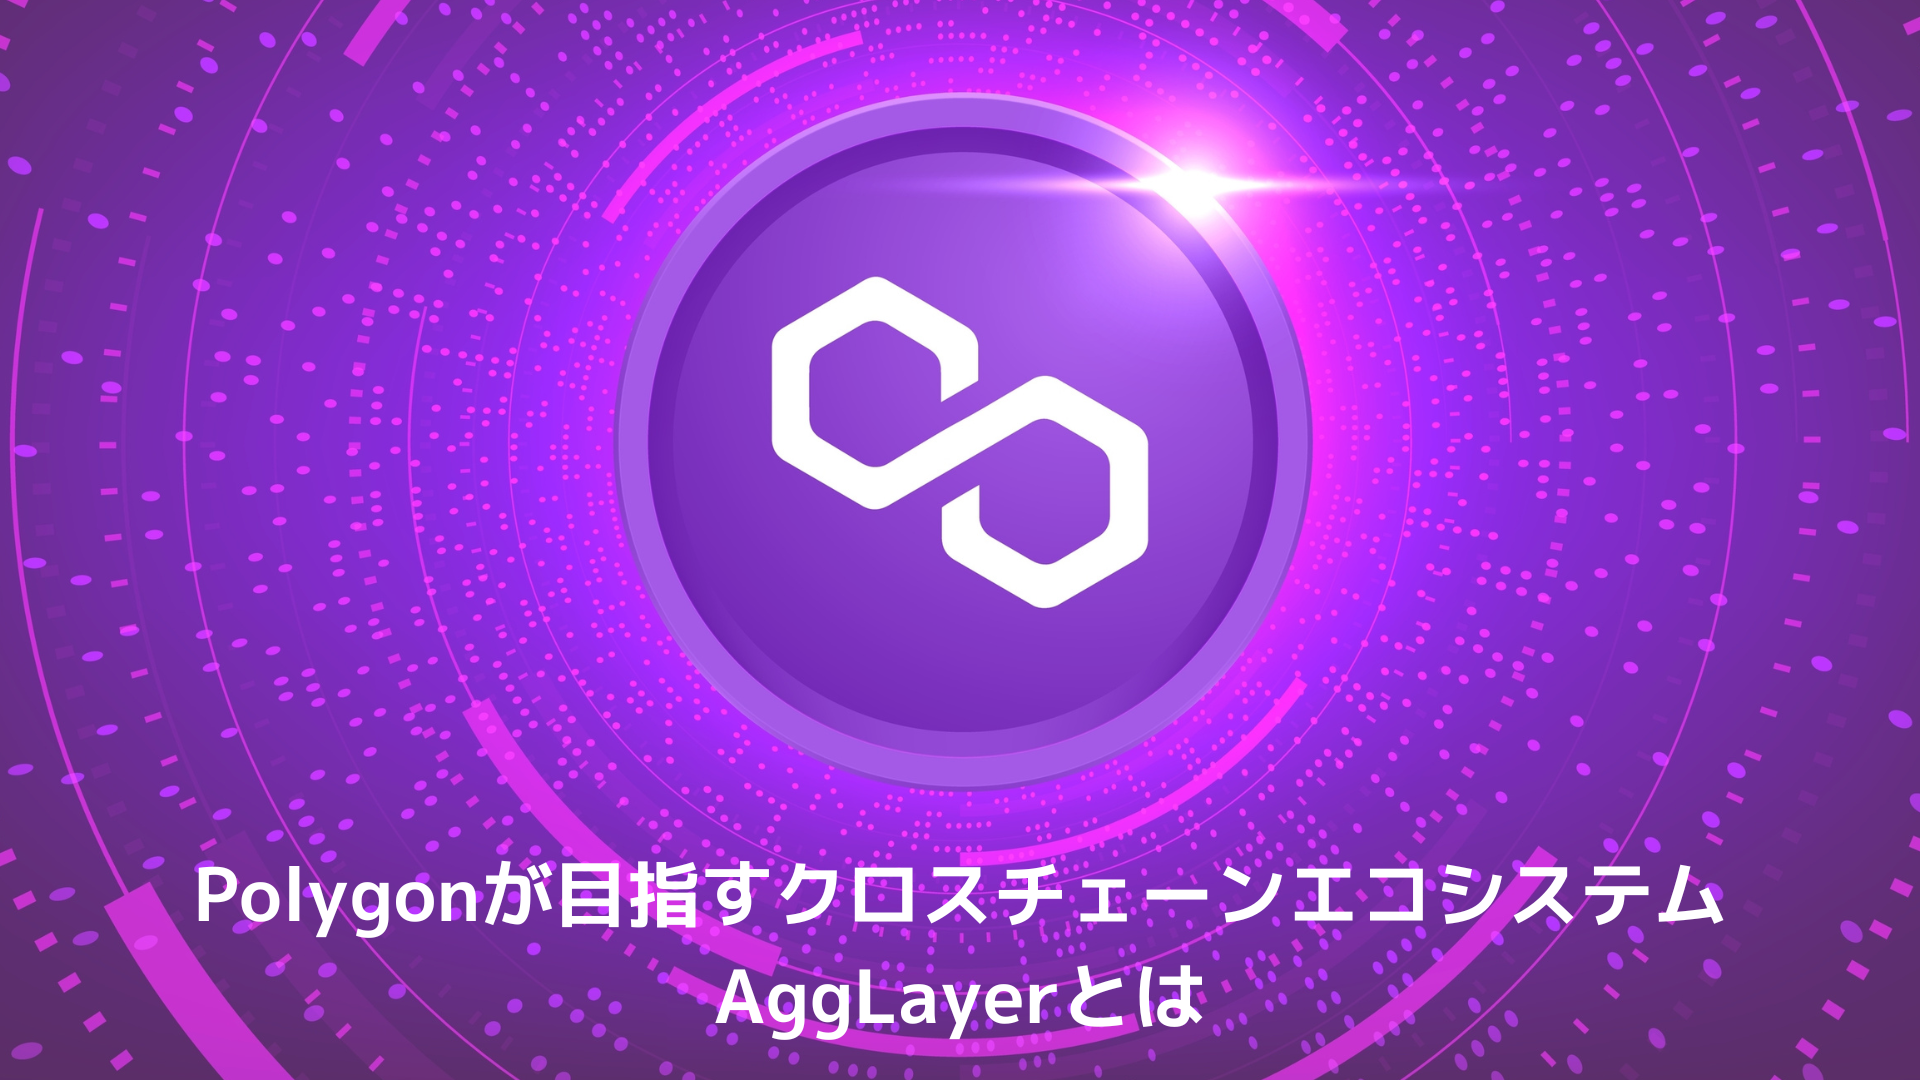 Polygonが目指すクロスチェーンエコシステム「AggLayer」とは